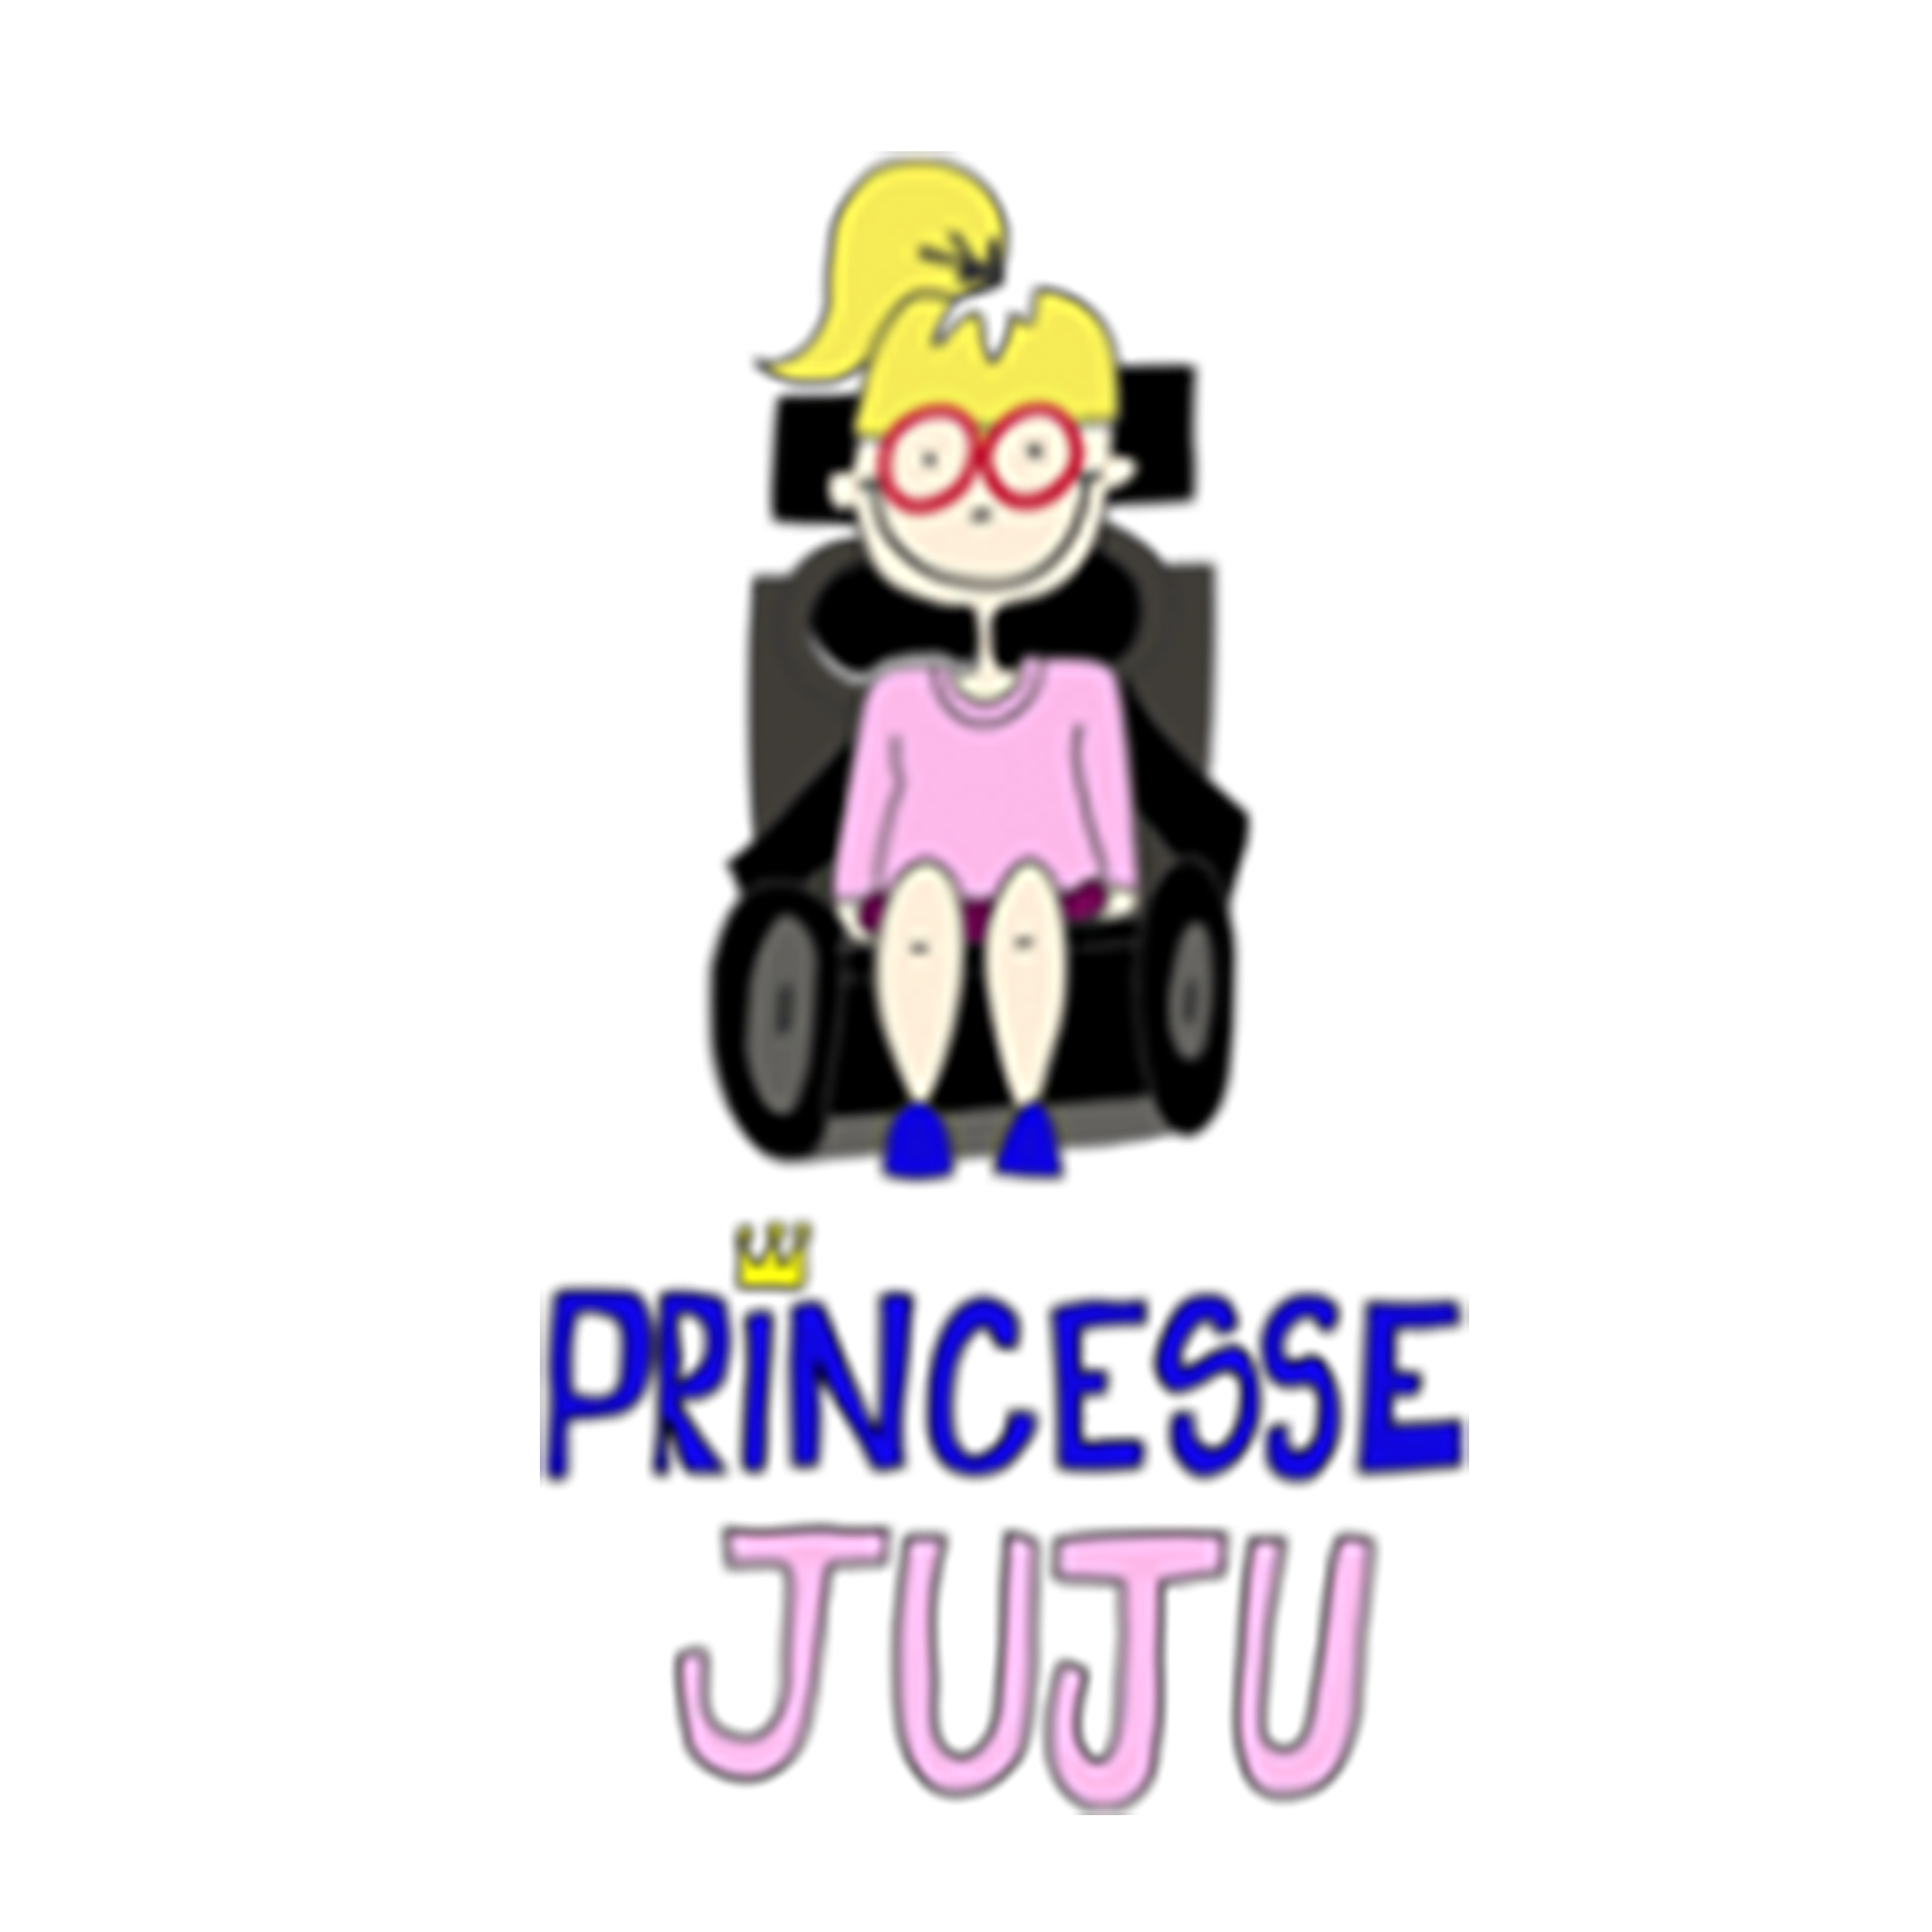 princesse juju